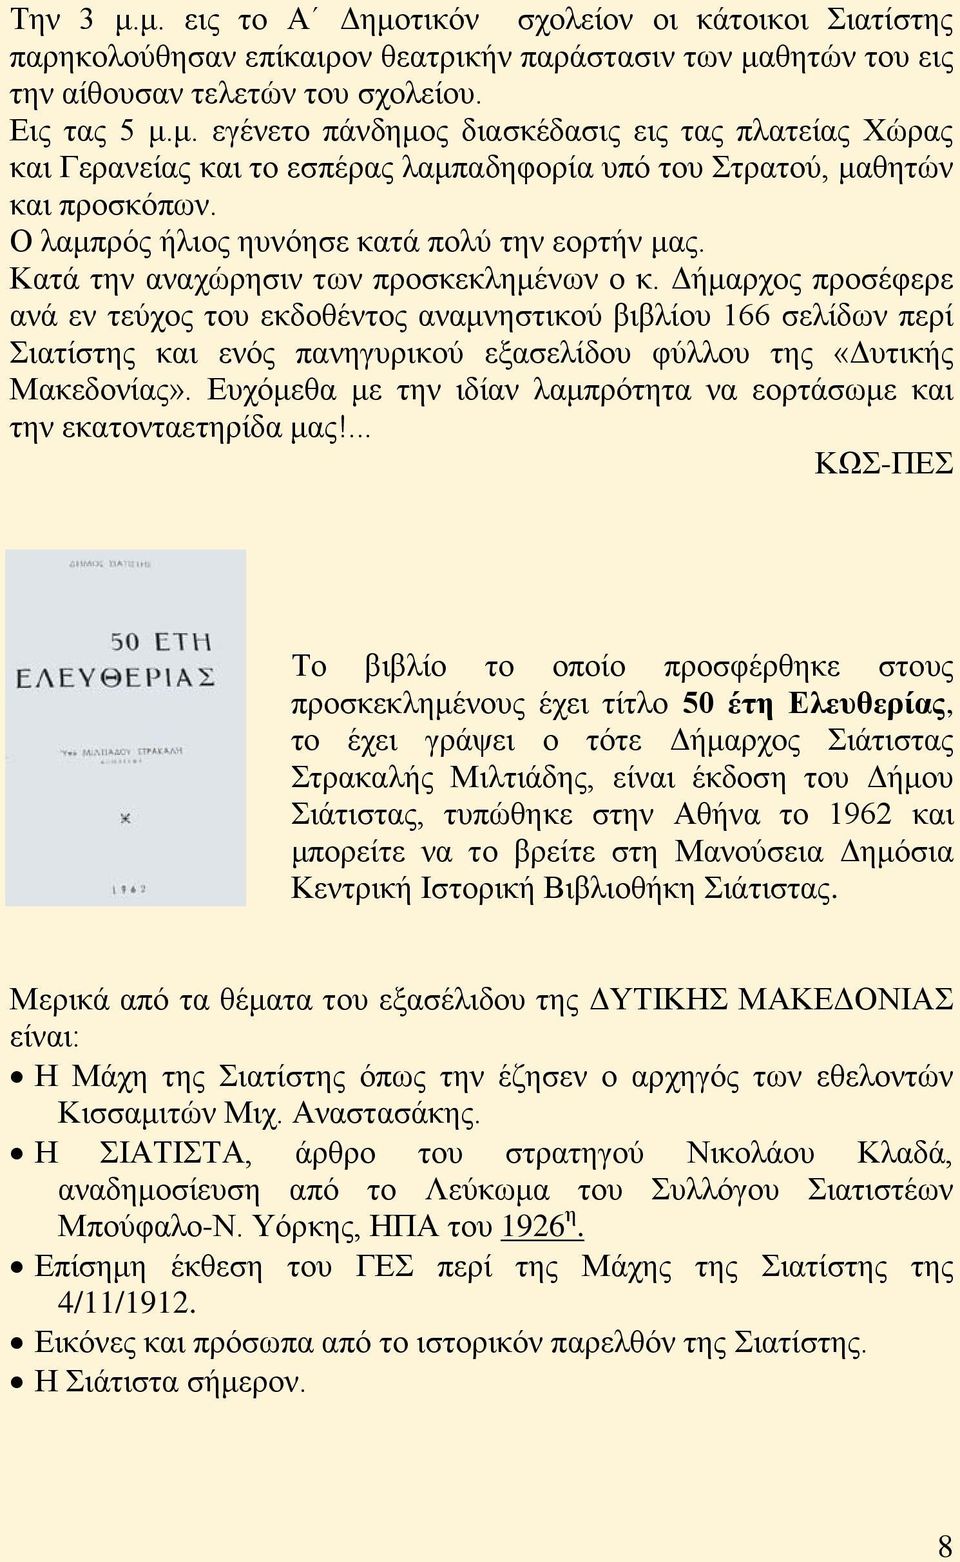 Δήμαρχος προσέφερε ανά εν τεύχος του εκδοθέντος αναμνηστικού βιβλίου 166 σελίδων περί Σιατίστης και ενός πανηγυρικού εξασελίδου φύλλου της «Δυτικής Μακεδονίας».